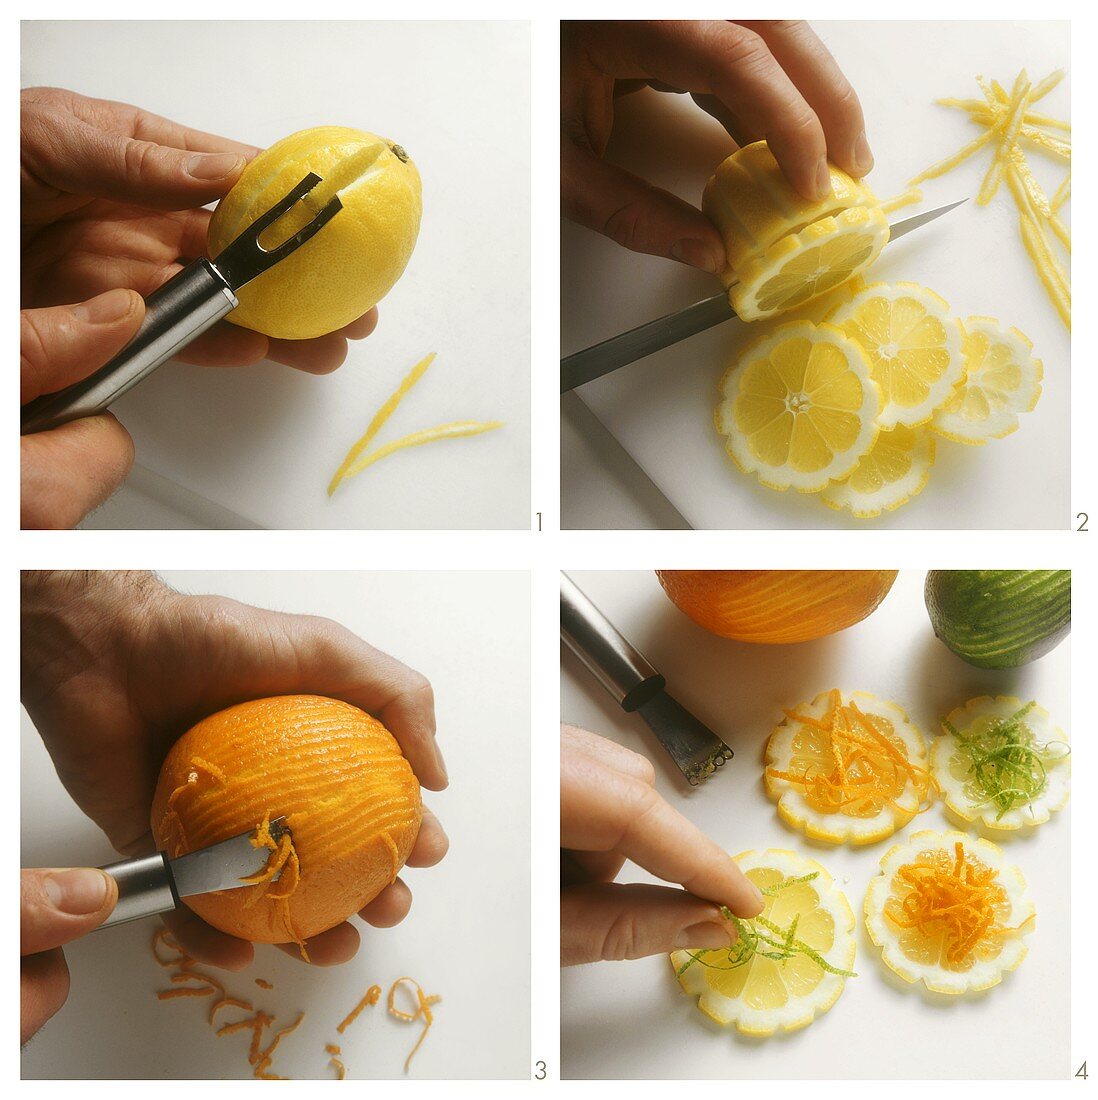 Zitronenscheiben mit Orangenjulienne